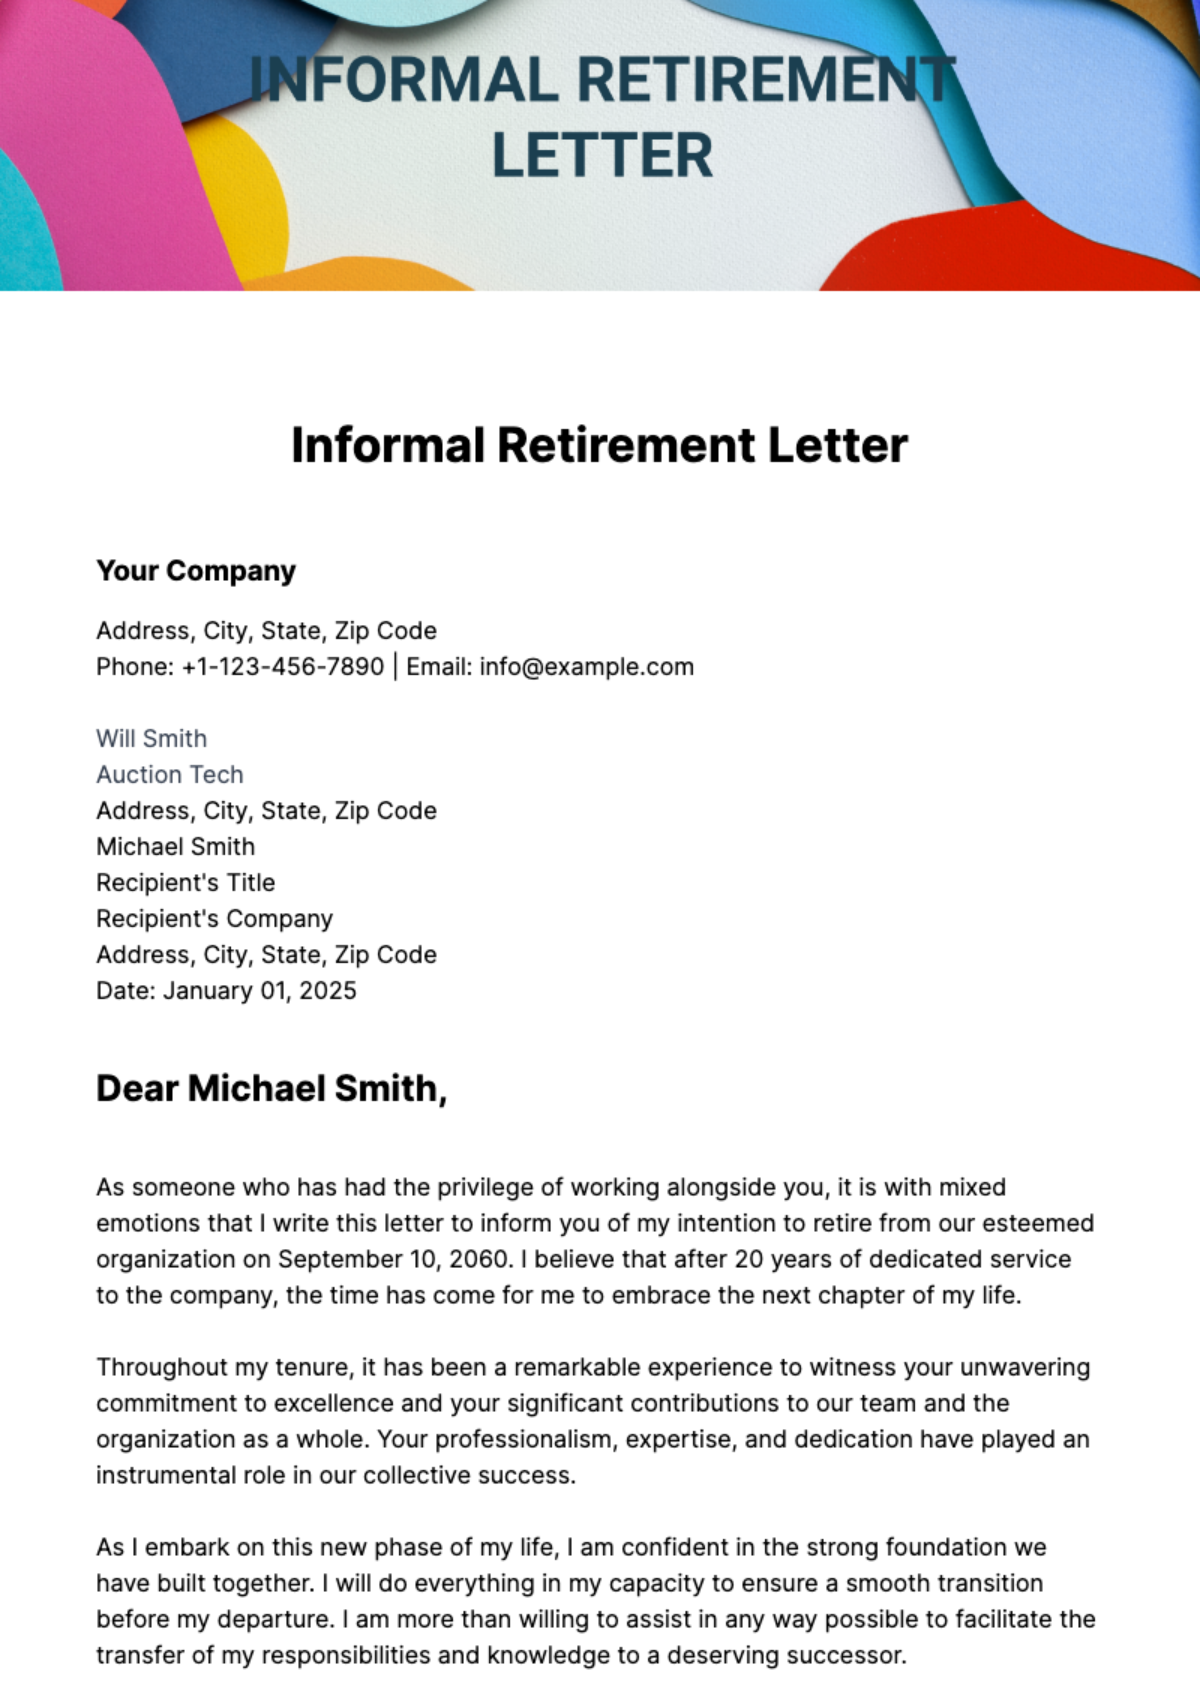 Informal Retirement Letter Template